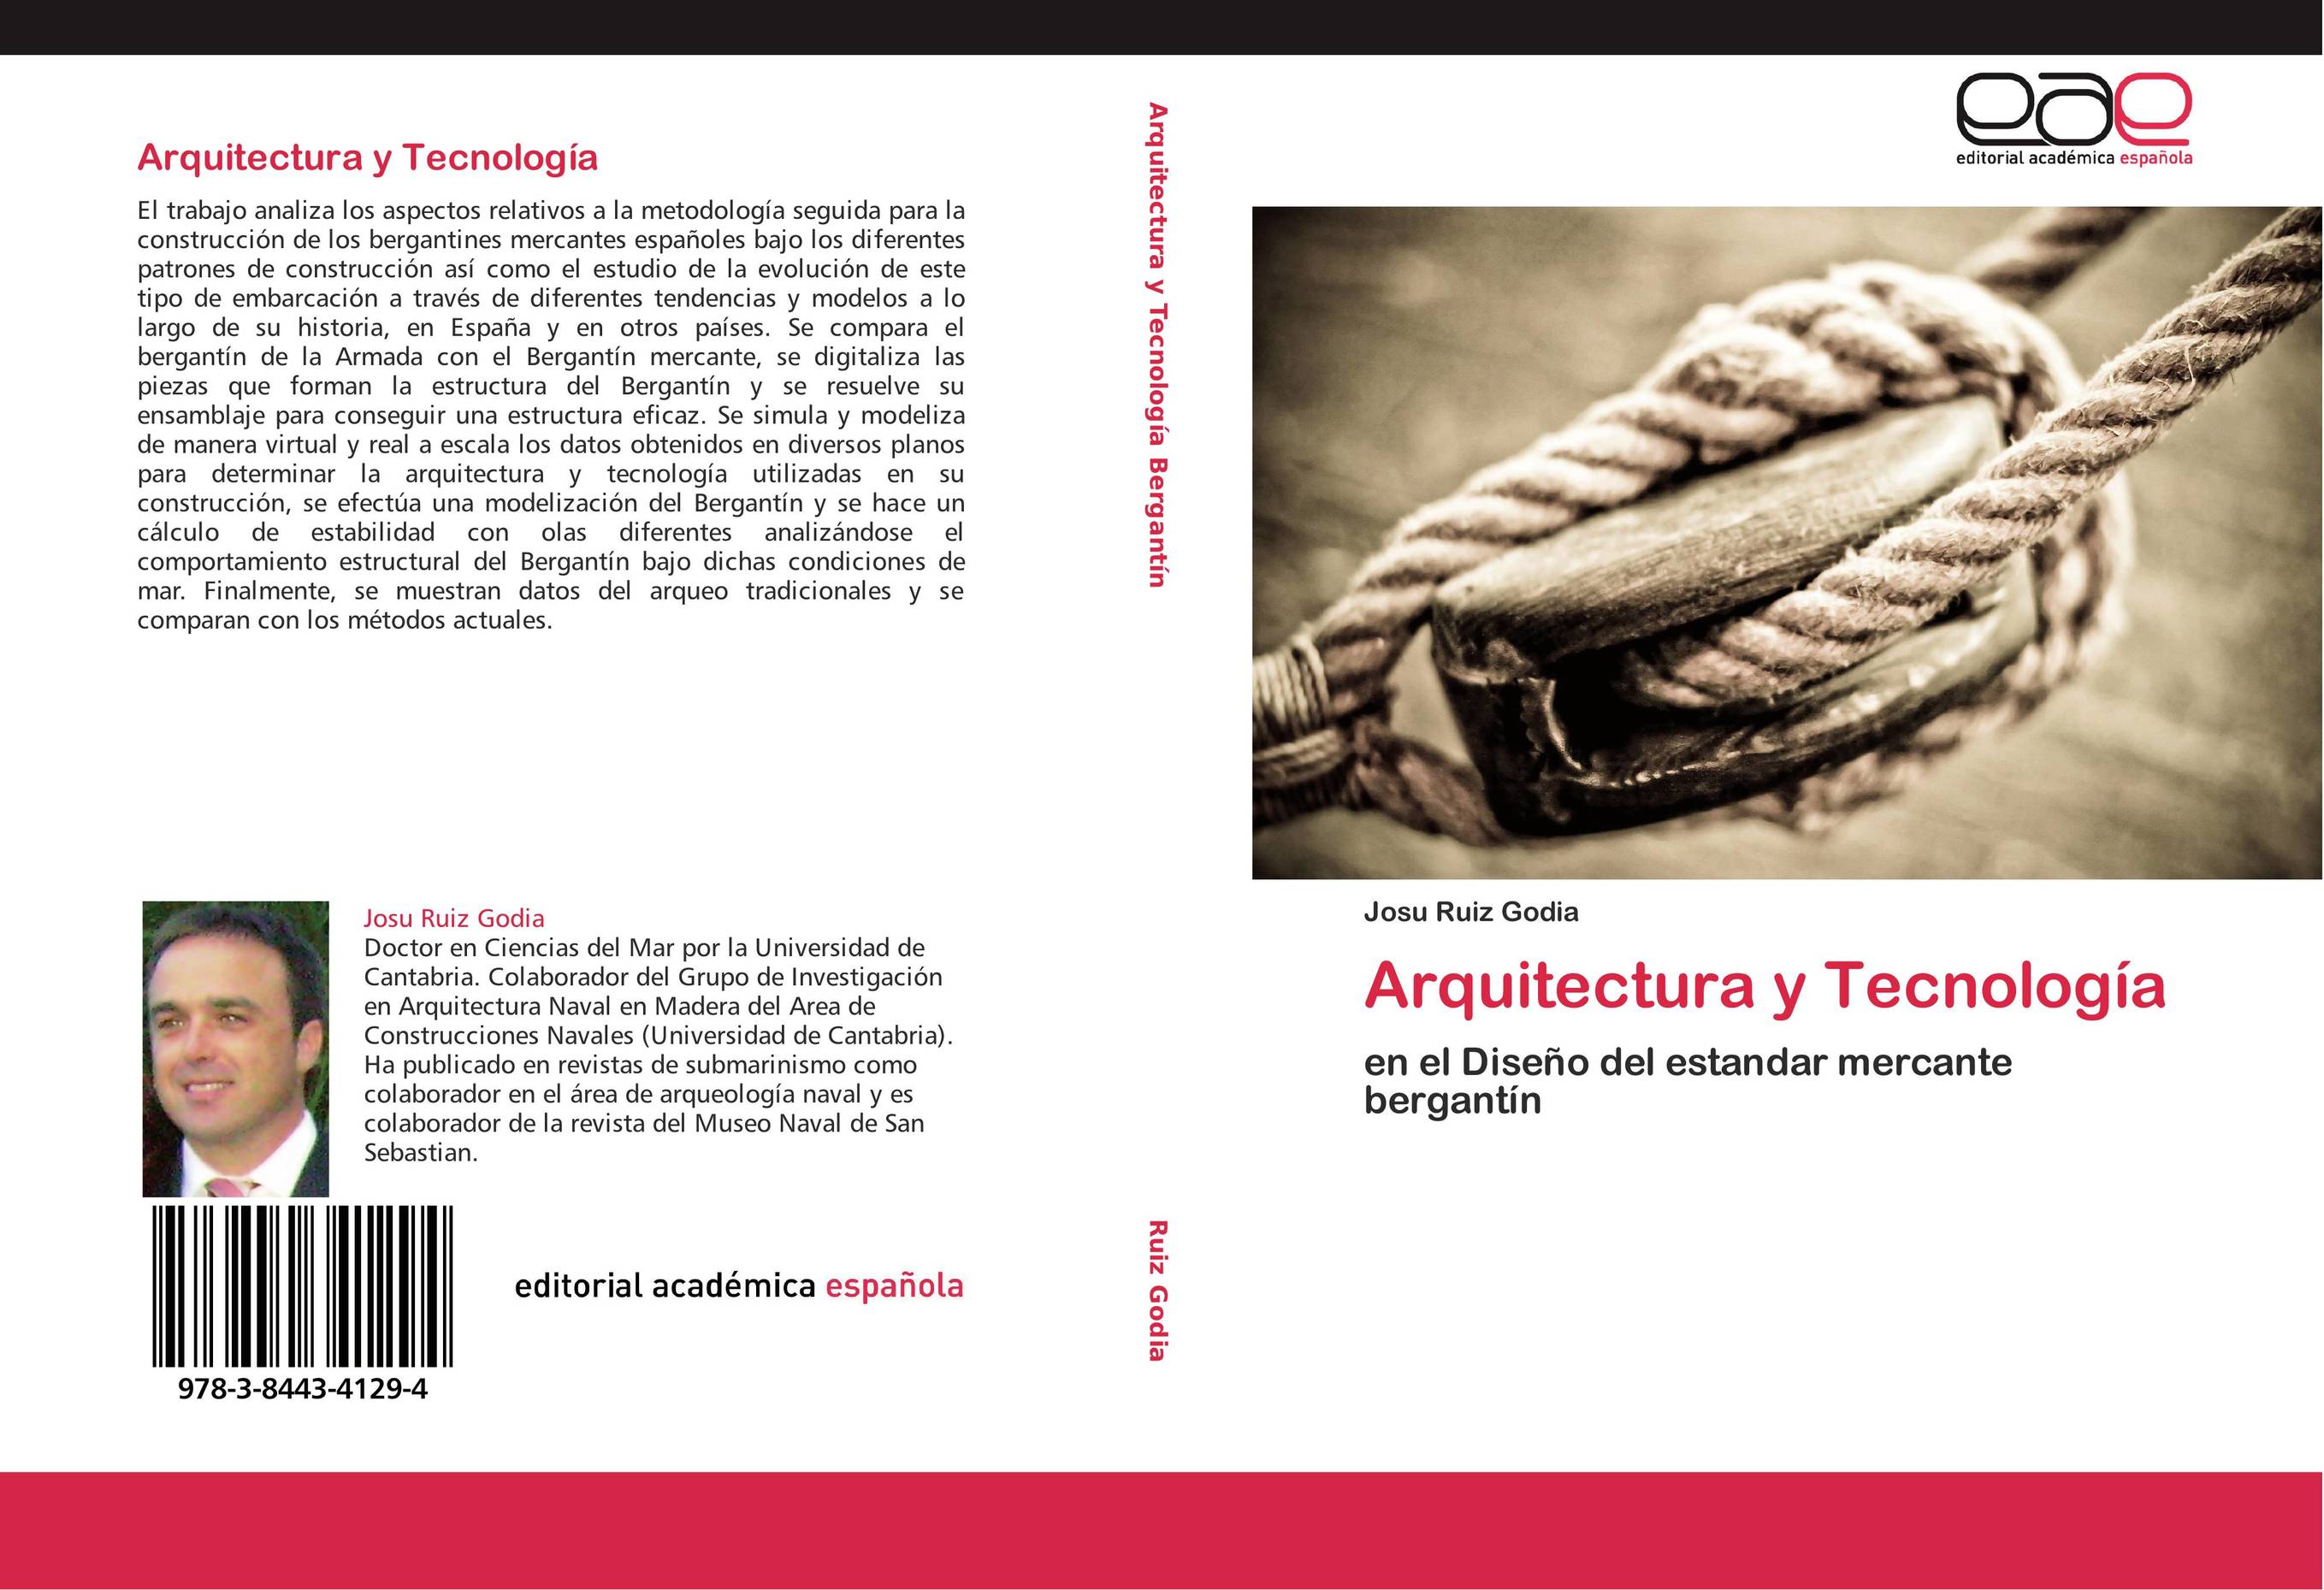 Arquitectura y Tecnología